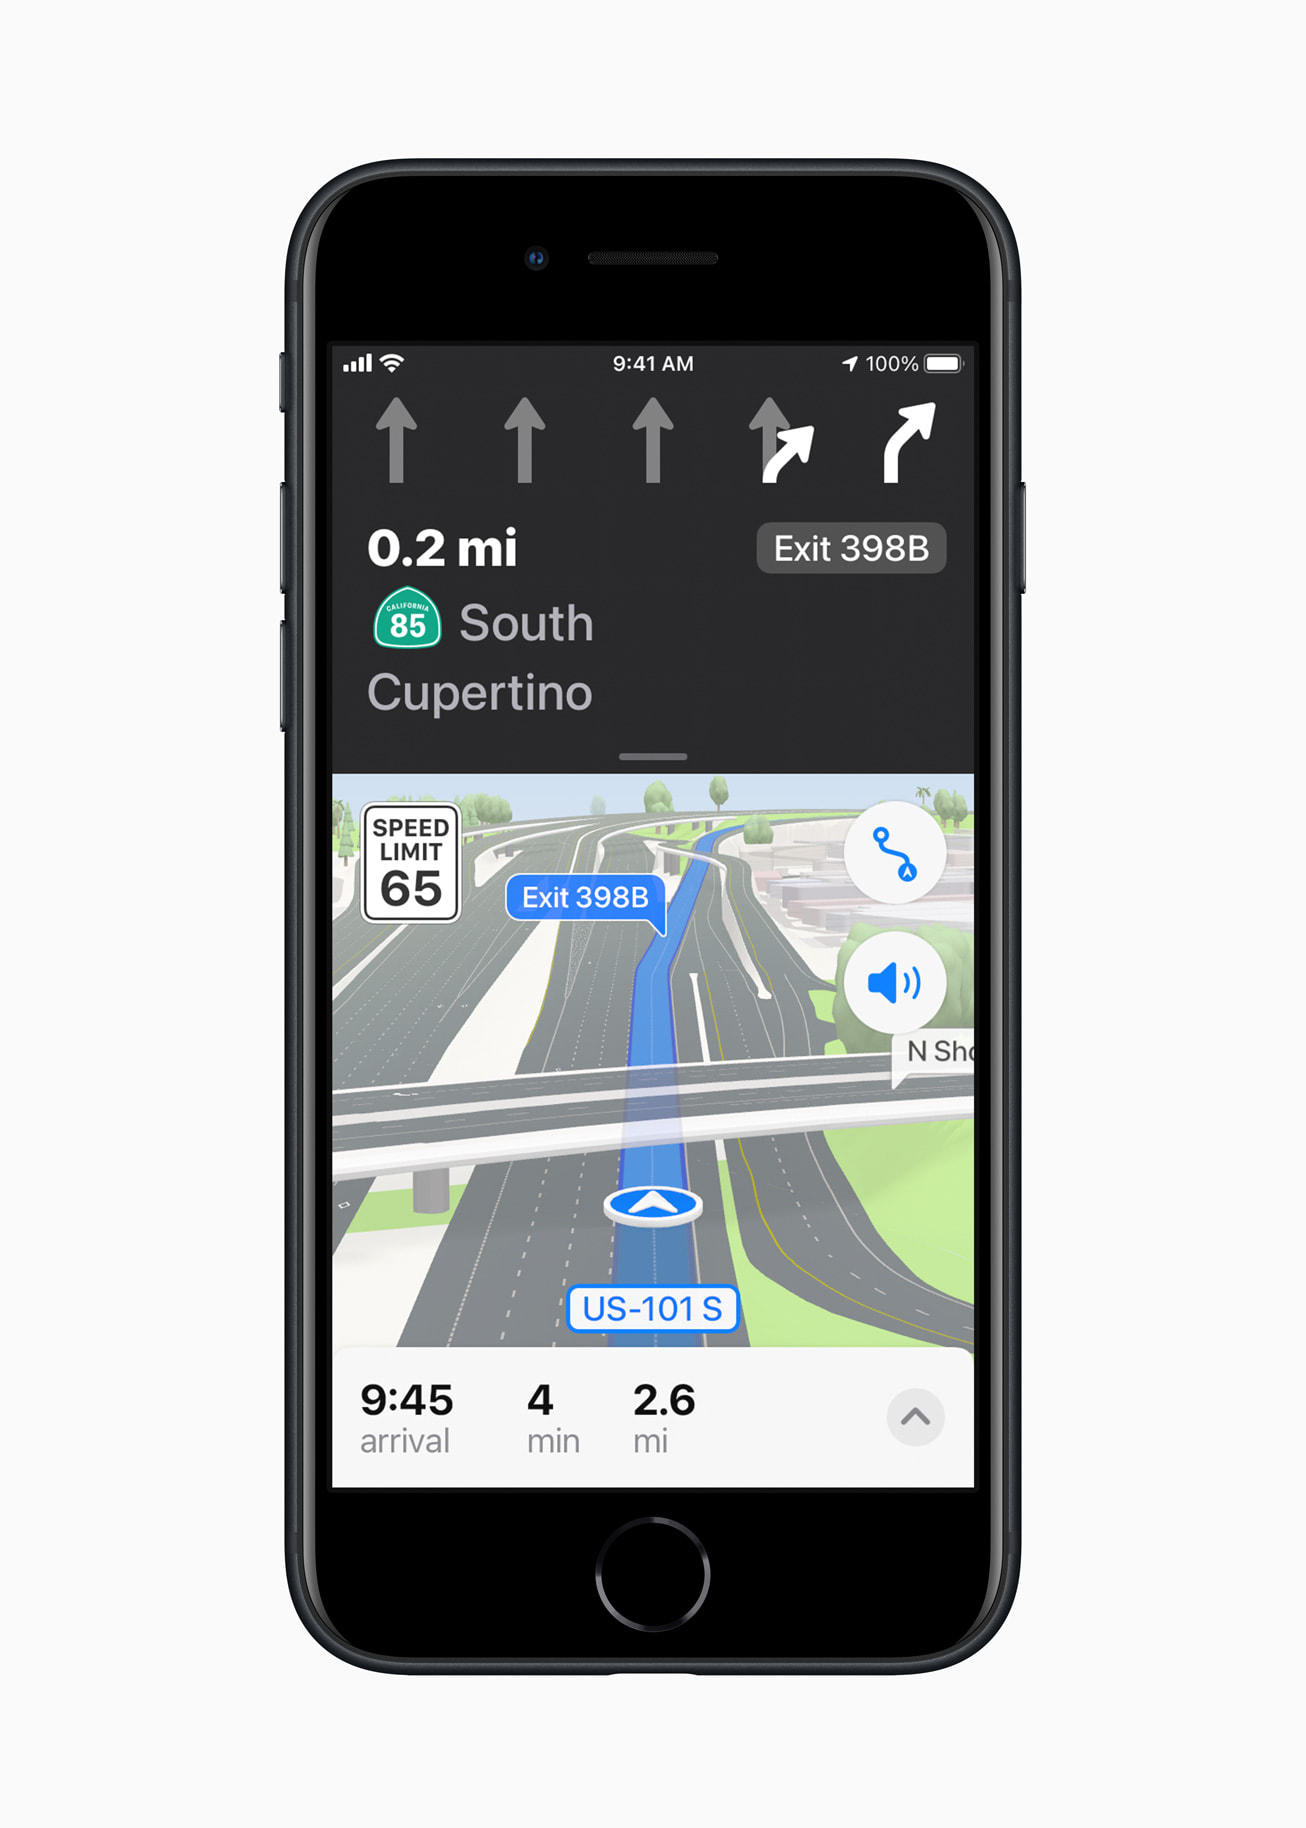 नया iPhone आधी रात के अंत में है, जिसमें नए iOS 15 प्लान फीचर को प्रदर्शित किया गया है, जो तीन आयामों में एक शहरी ड्राइविंग अनुभव प्रदान करता है।